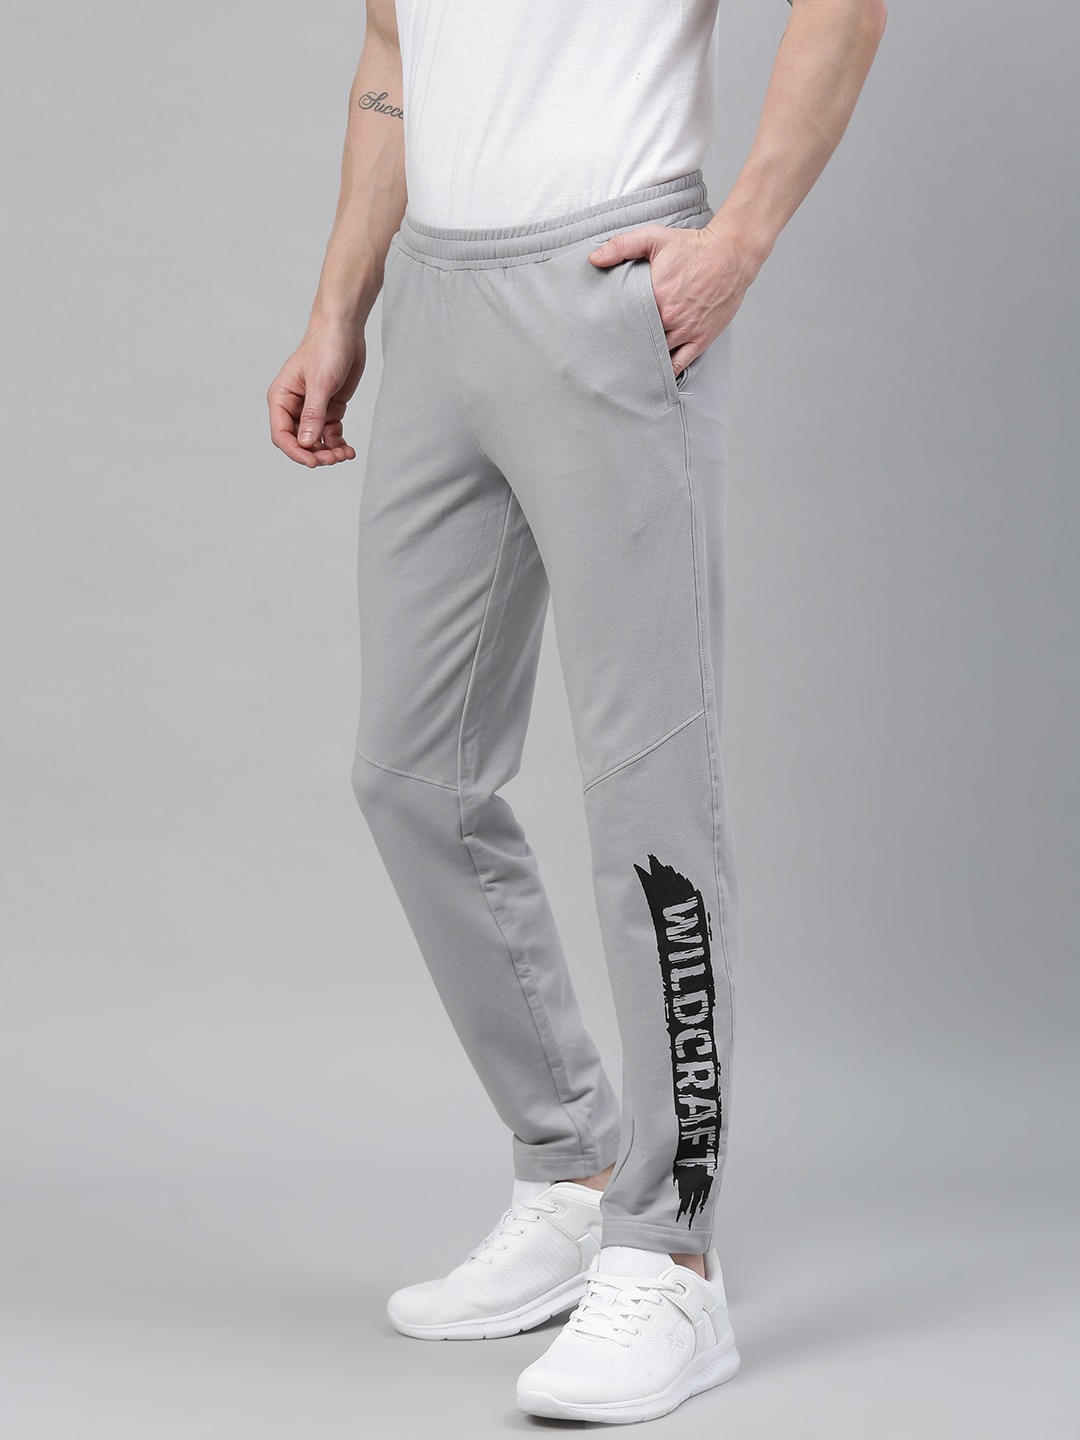 Wildcraft Men Grey Printed 2 Slim Fit Track Pants